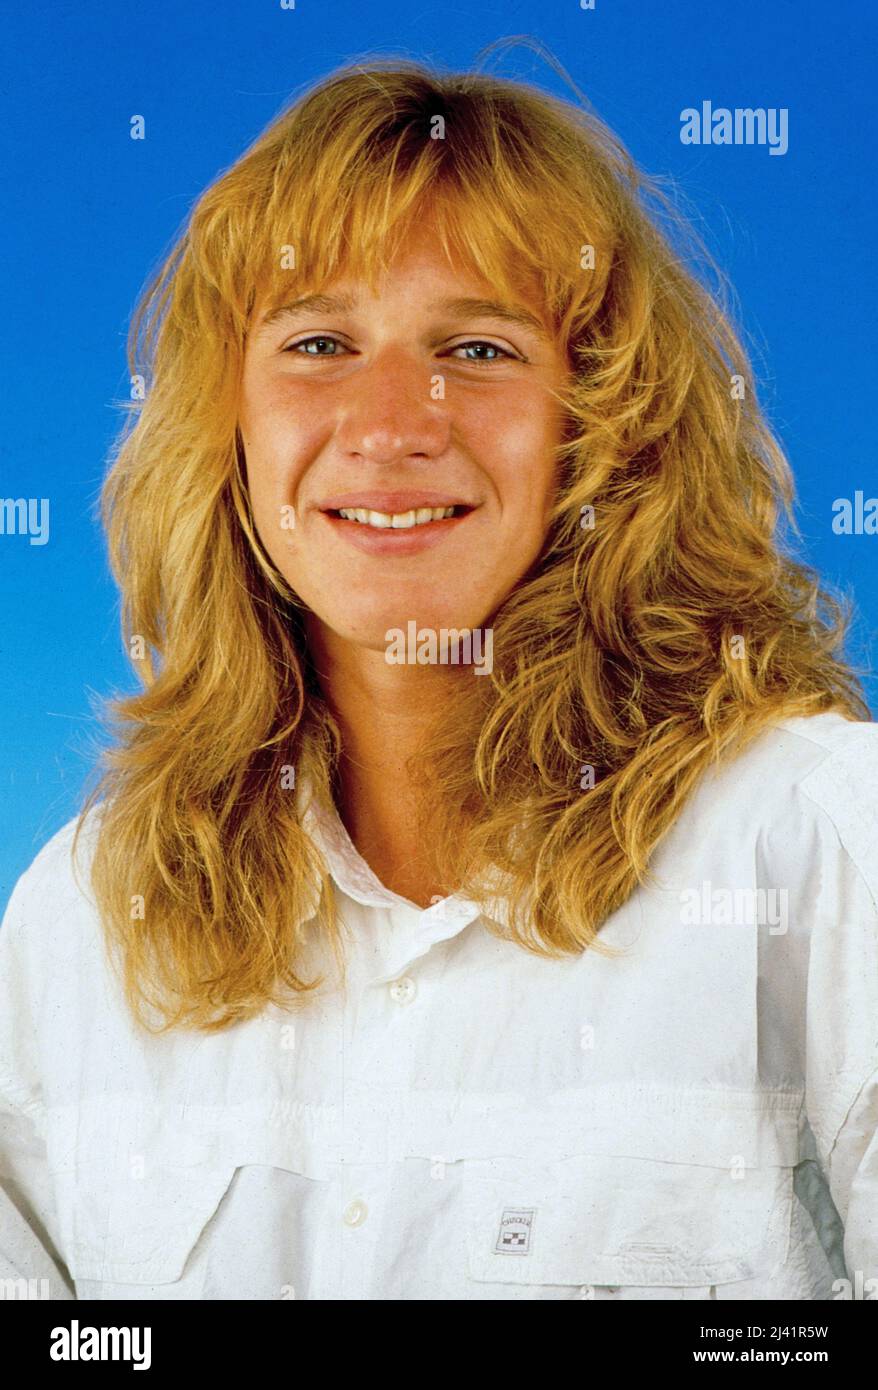 Stefanie Maria Steffi Graf, deutsche Tennisspielerin und Golden-Slam-Gewinnerin, bei einem Promo-Fotoshooting, Deutschland um 1987. Stock Photo